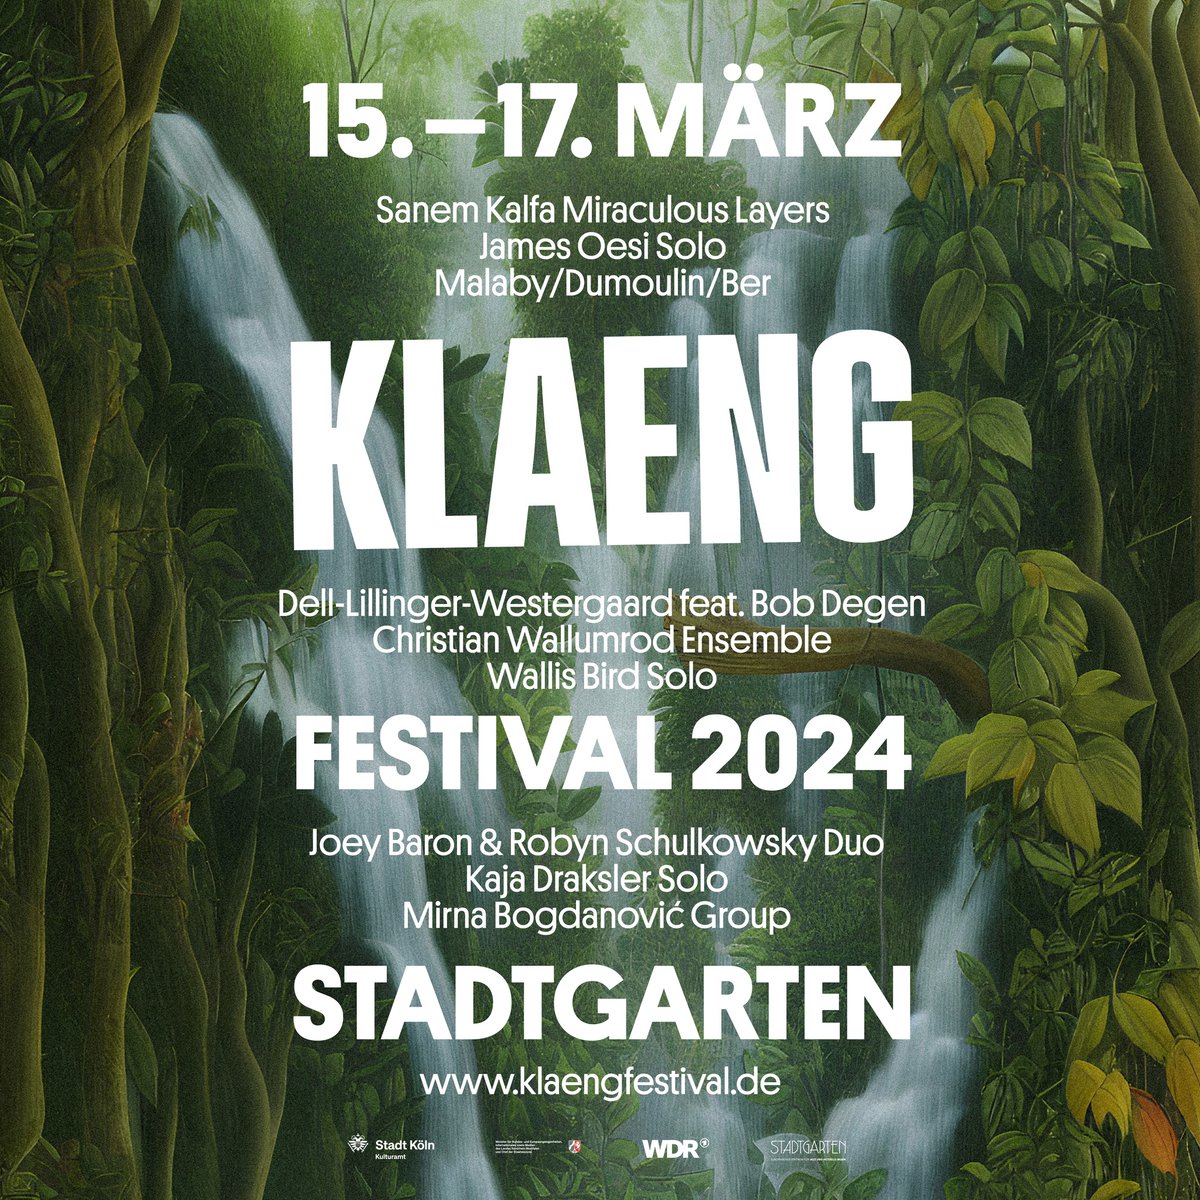 Vorfreude auf das #KLAENG Festival 2024 dieses Wochenende im Stadtgarten #Köln! Es gibt ein fein zusammengestelltes Programm und am Samstag um 19:00 Uhr #Dell-#Lillinger-#Westergaard feat. #BobDegen mit »Supermodern«. Weitere Informationen und Tickets: klaengfestival.de